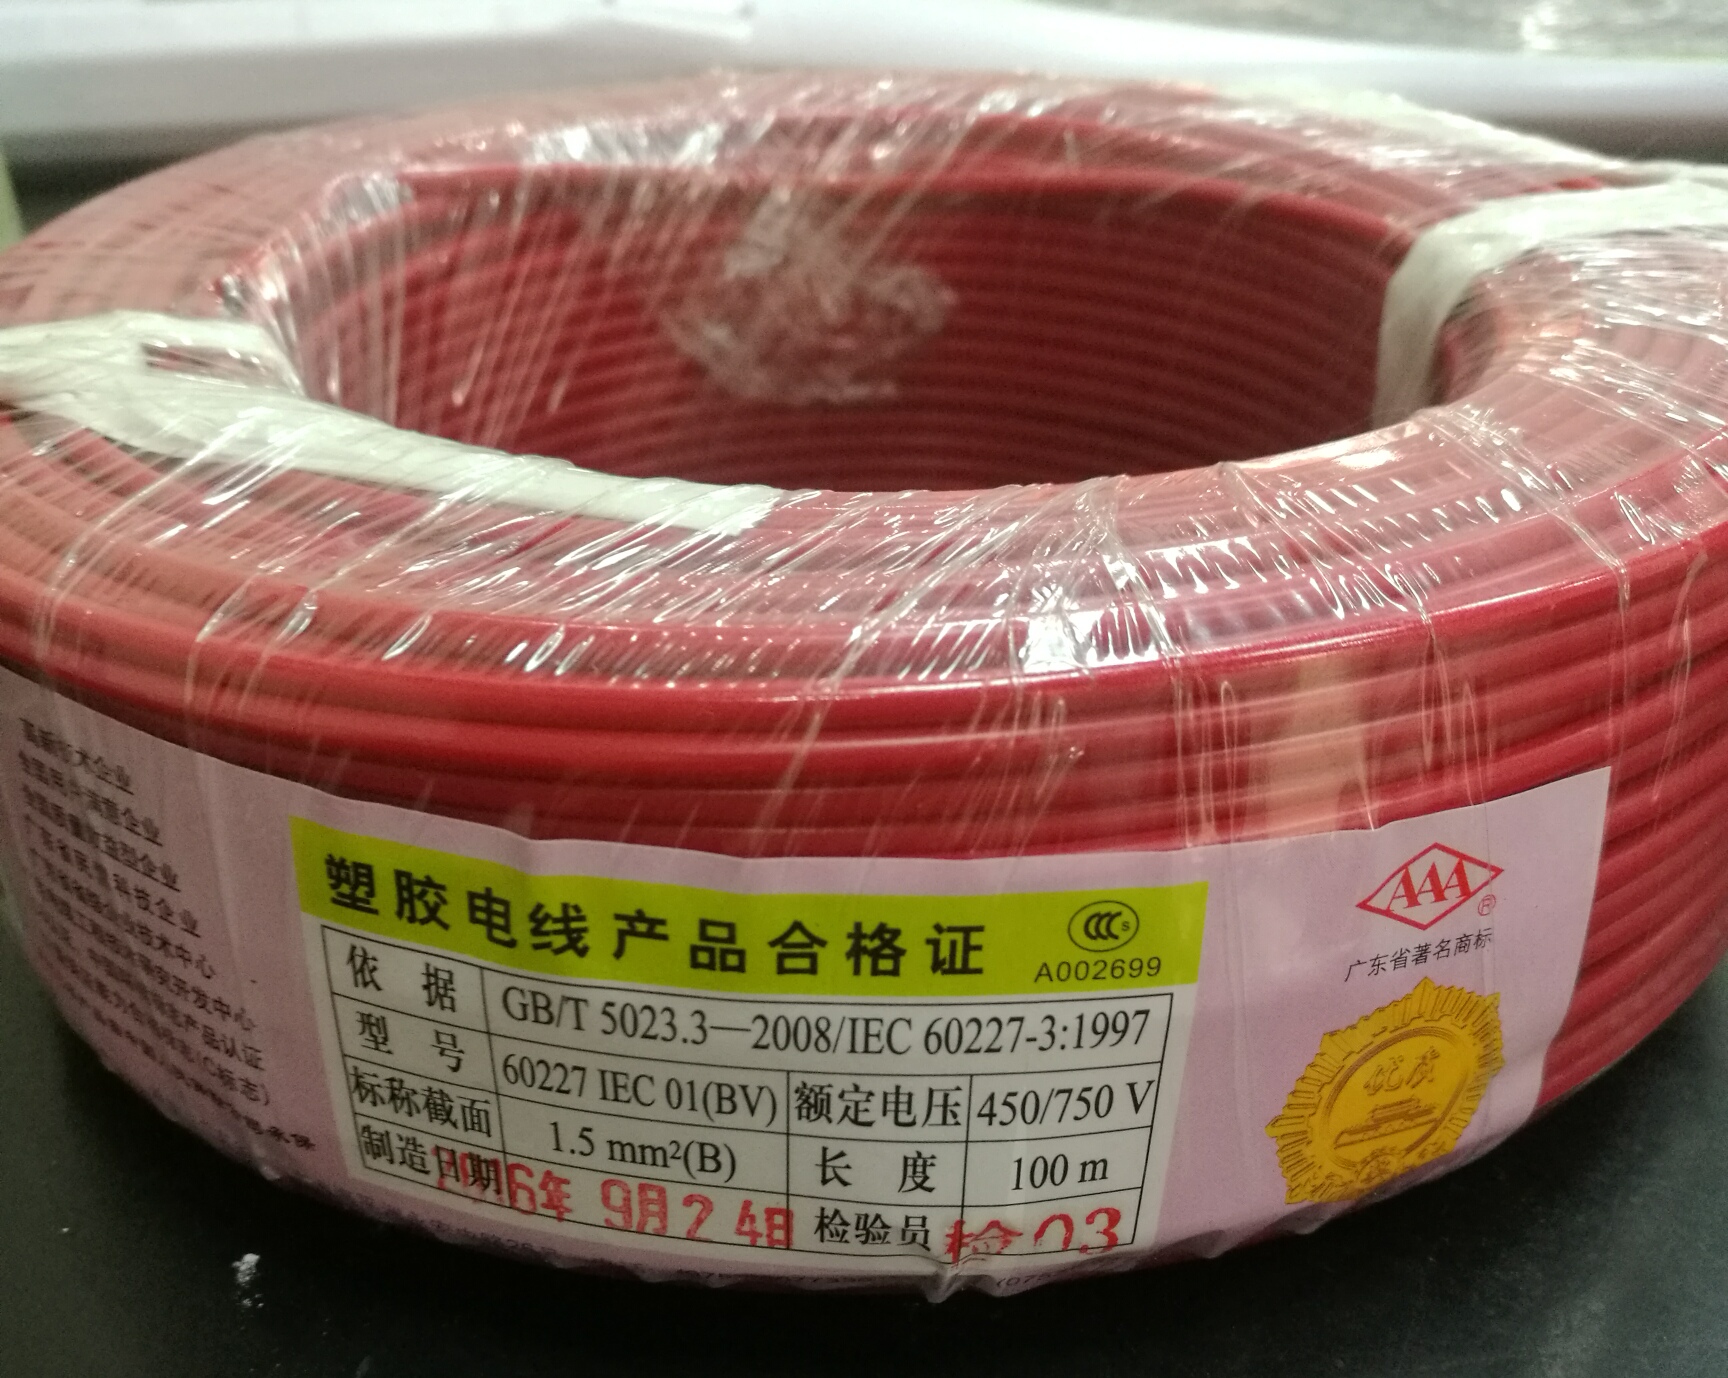 广东电缆厂AAA牌国标铜芯聚氯乙烯绝缘软电线BV(B)1.5平方 广东电缆,国标,AAA牌,BV(B)1.5